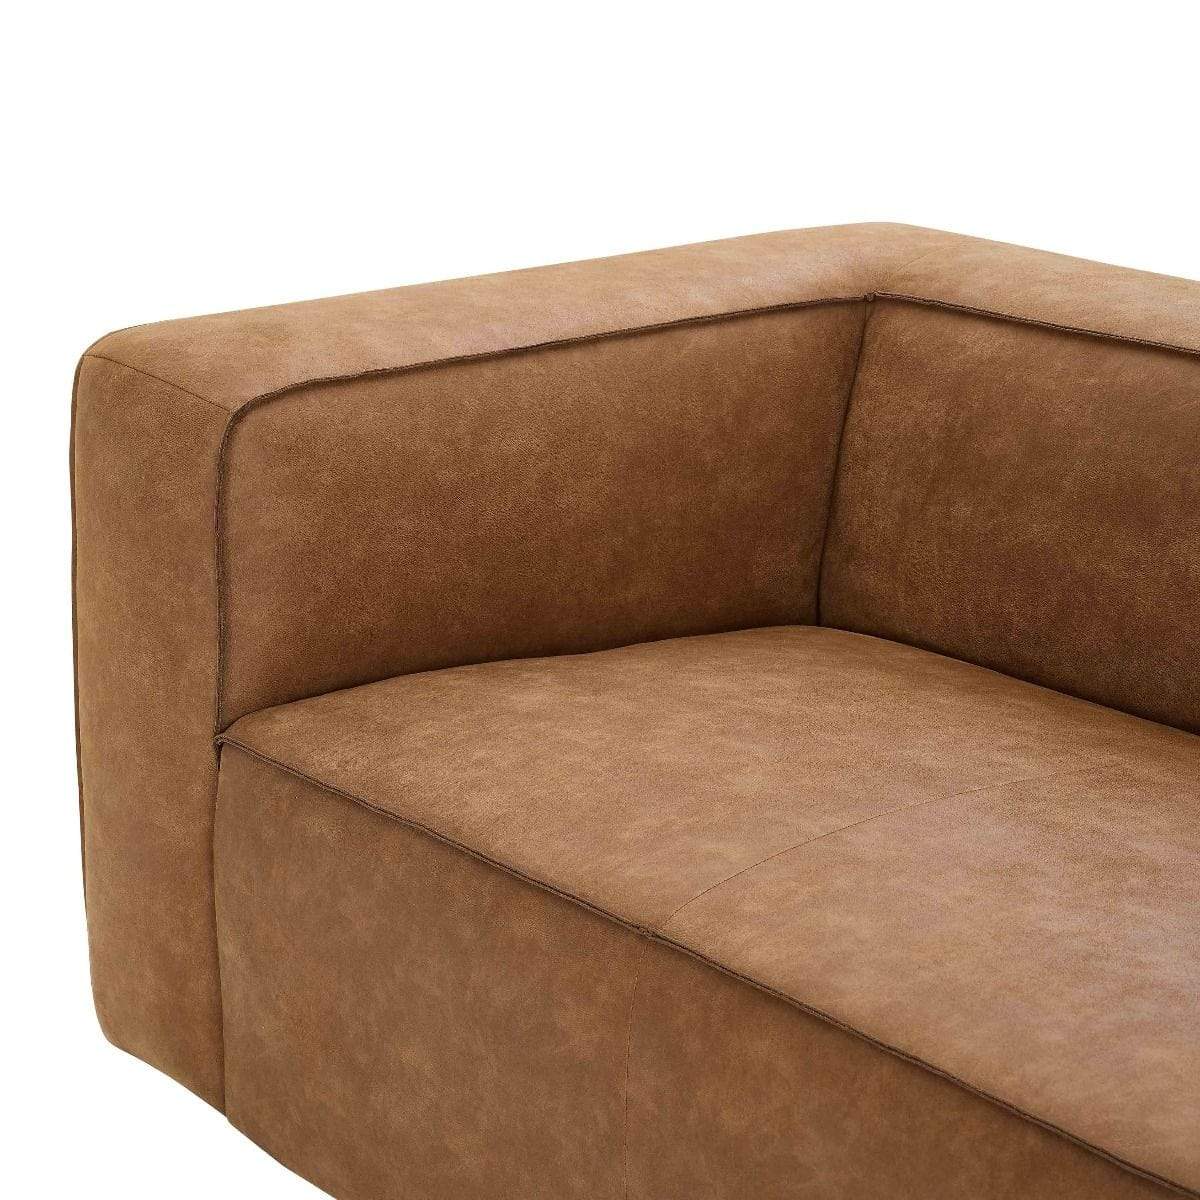 Candelabra Home Aurora Sofa Furniture tov-REN-L68159